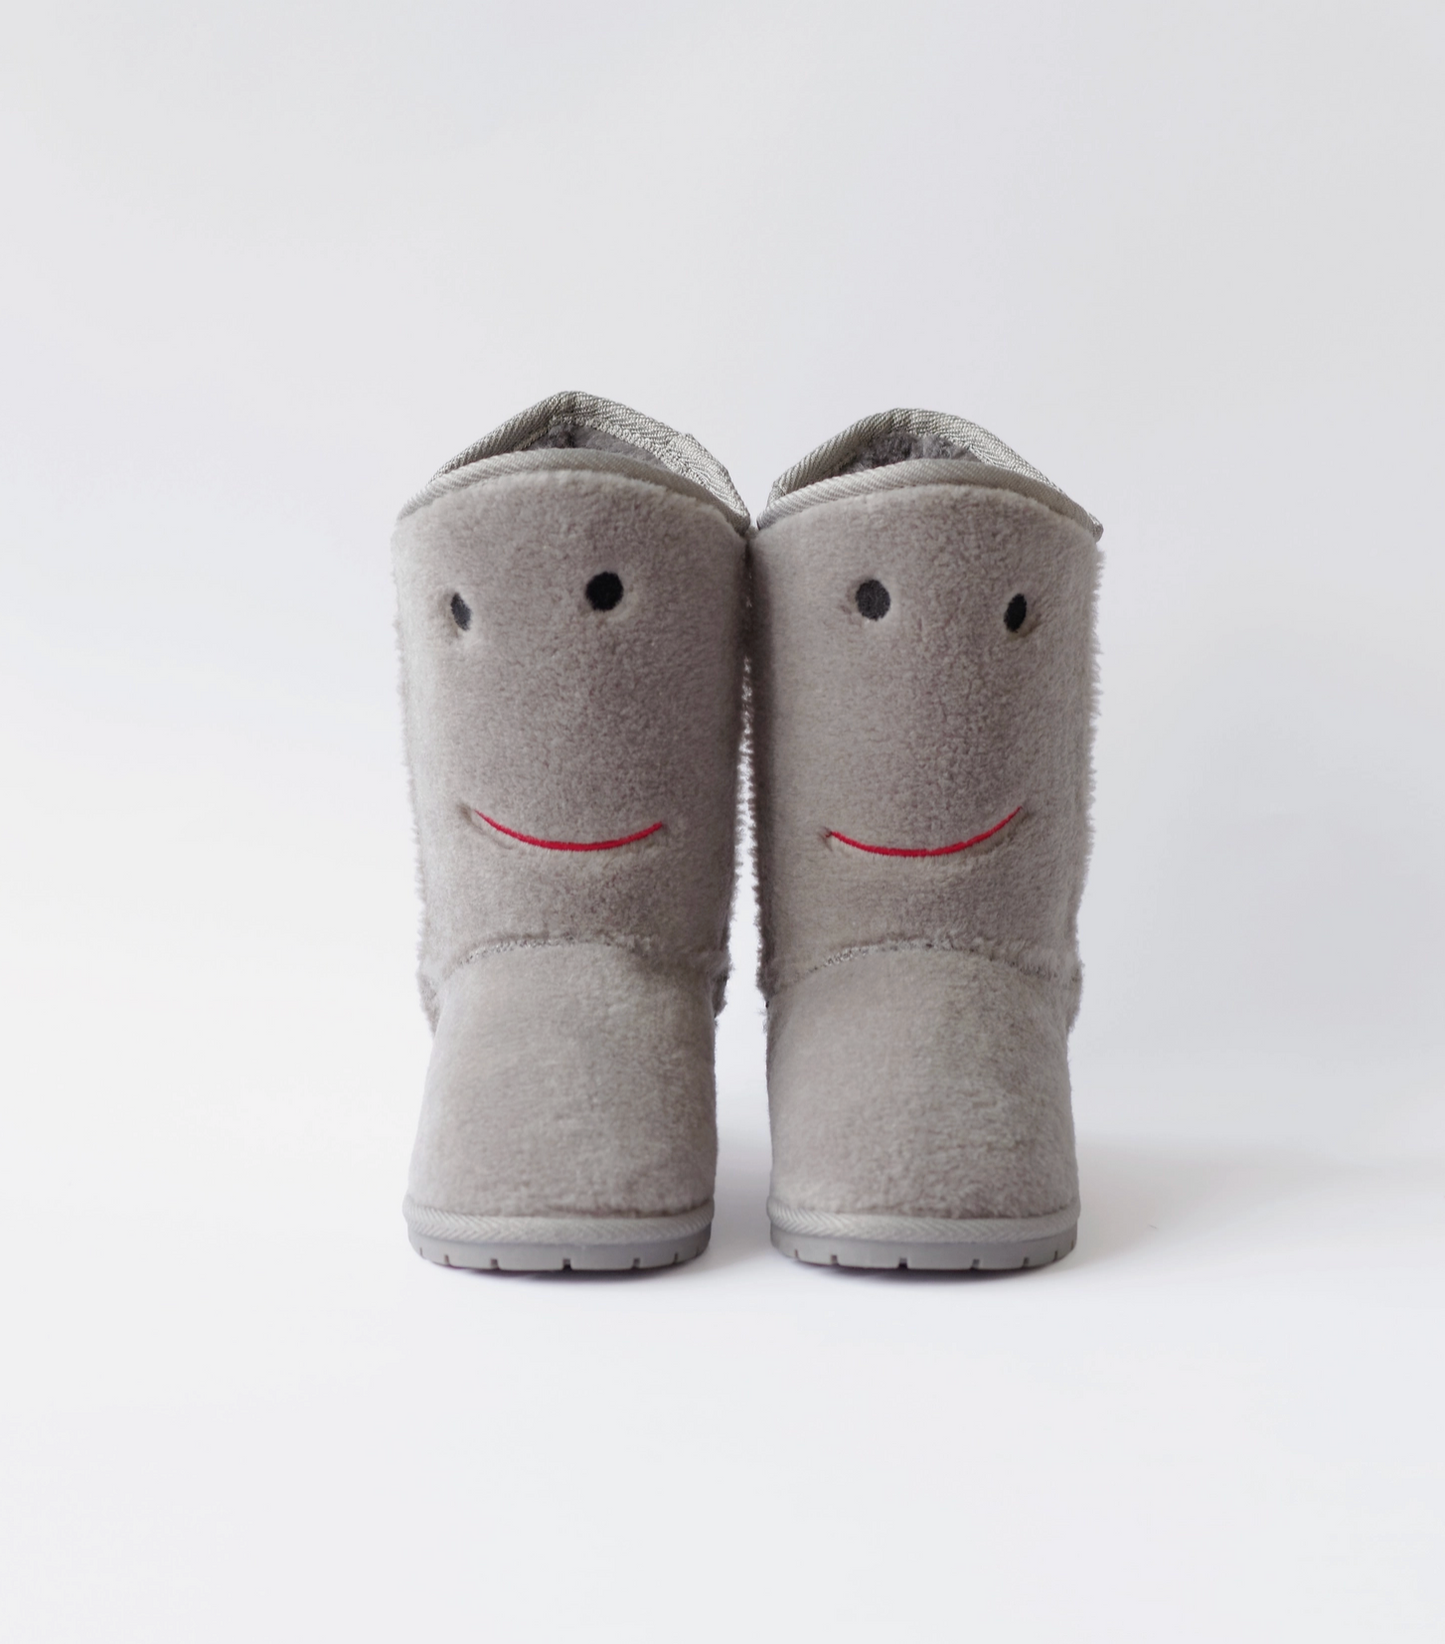 Kids Winter Warm Boots - Trolly Gray